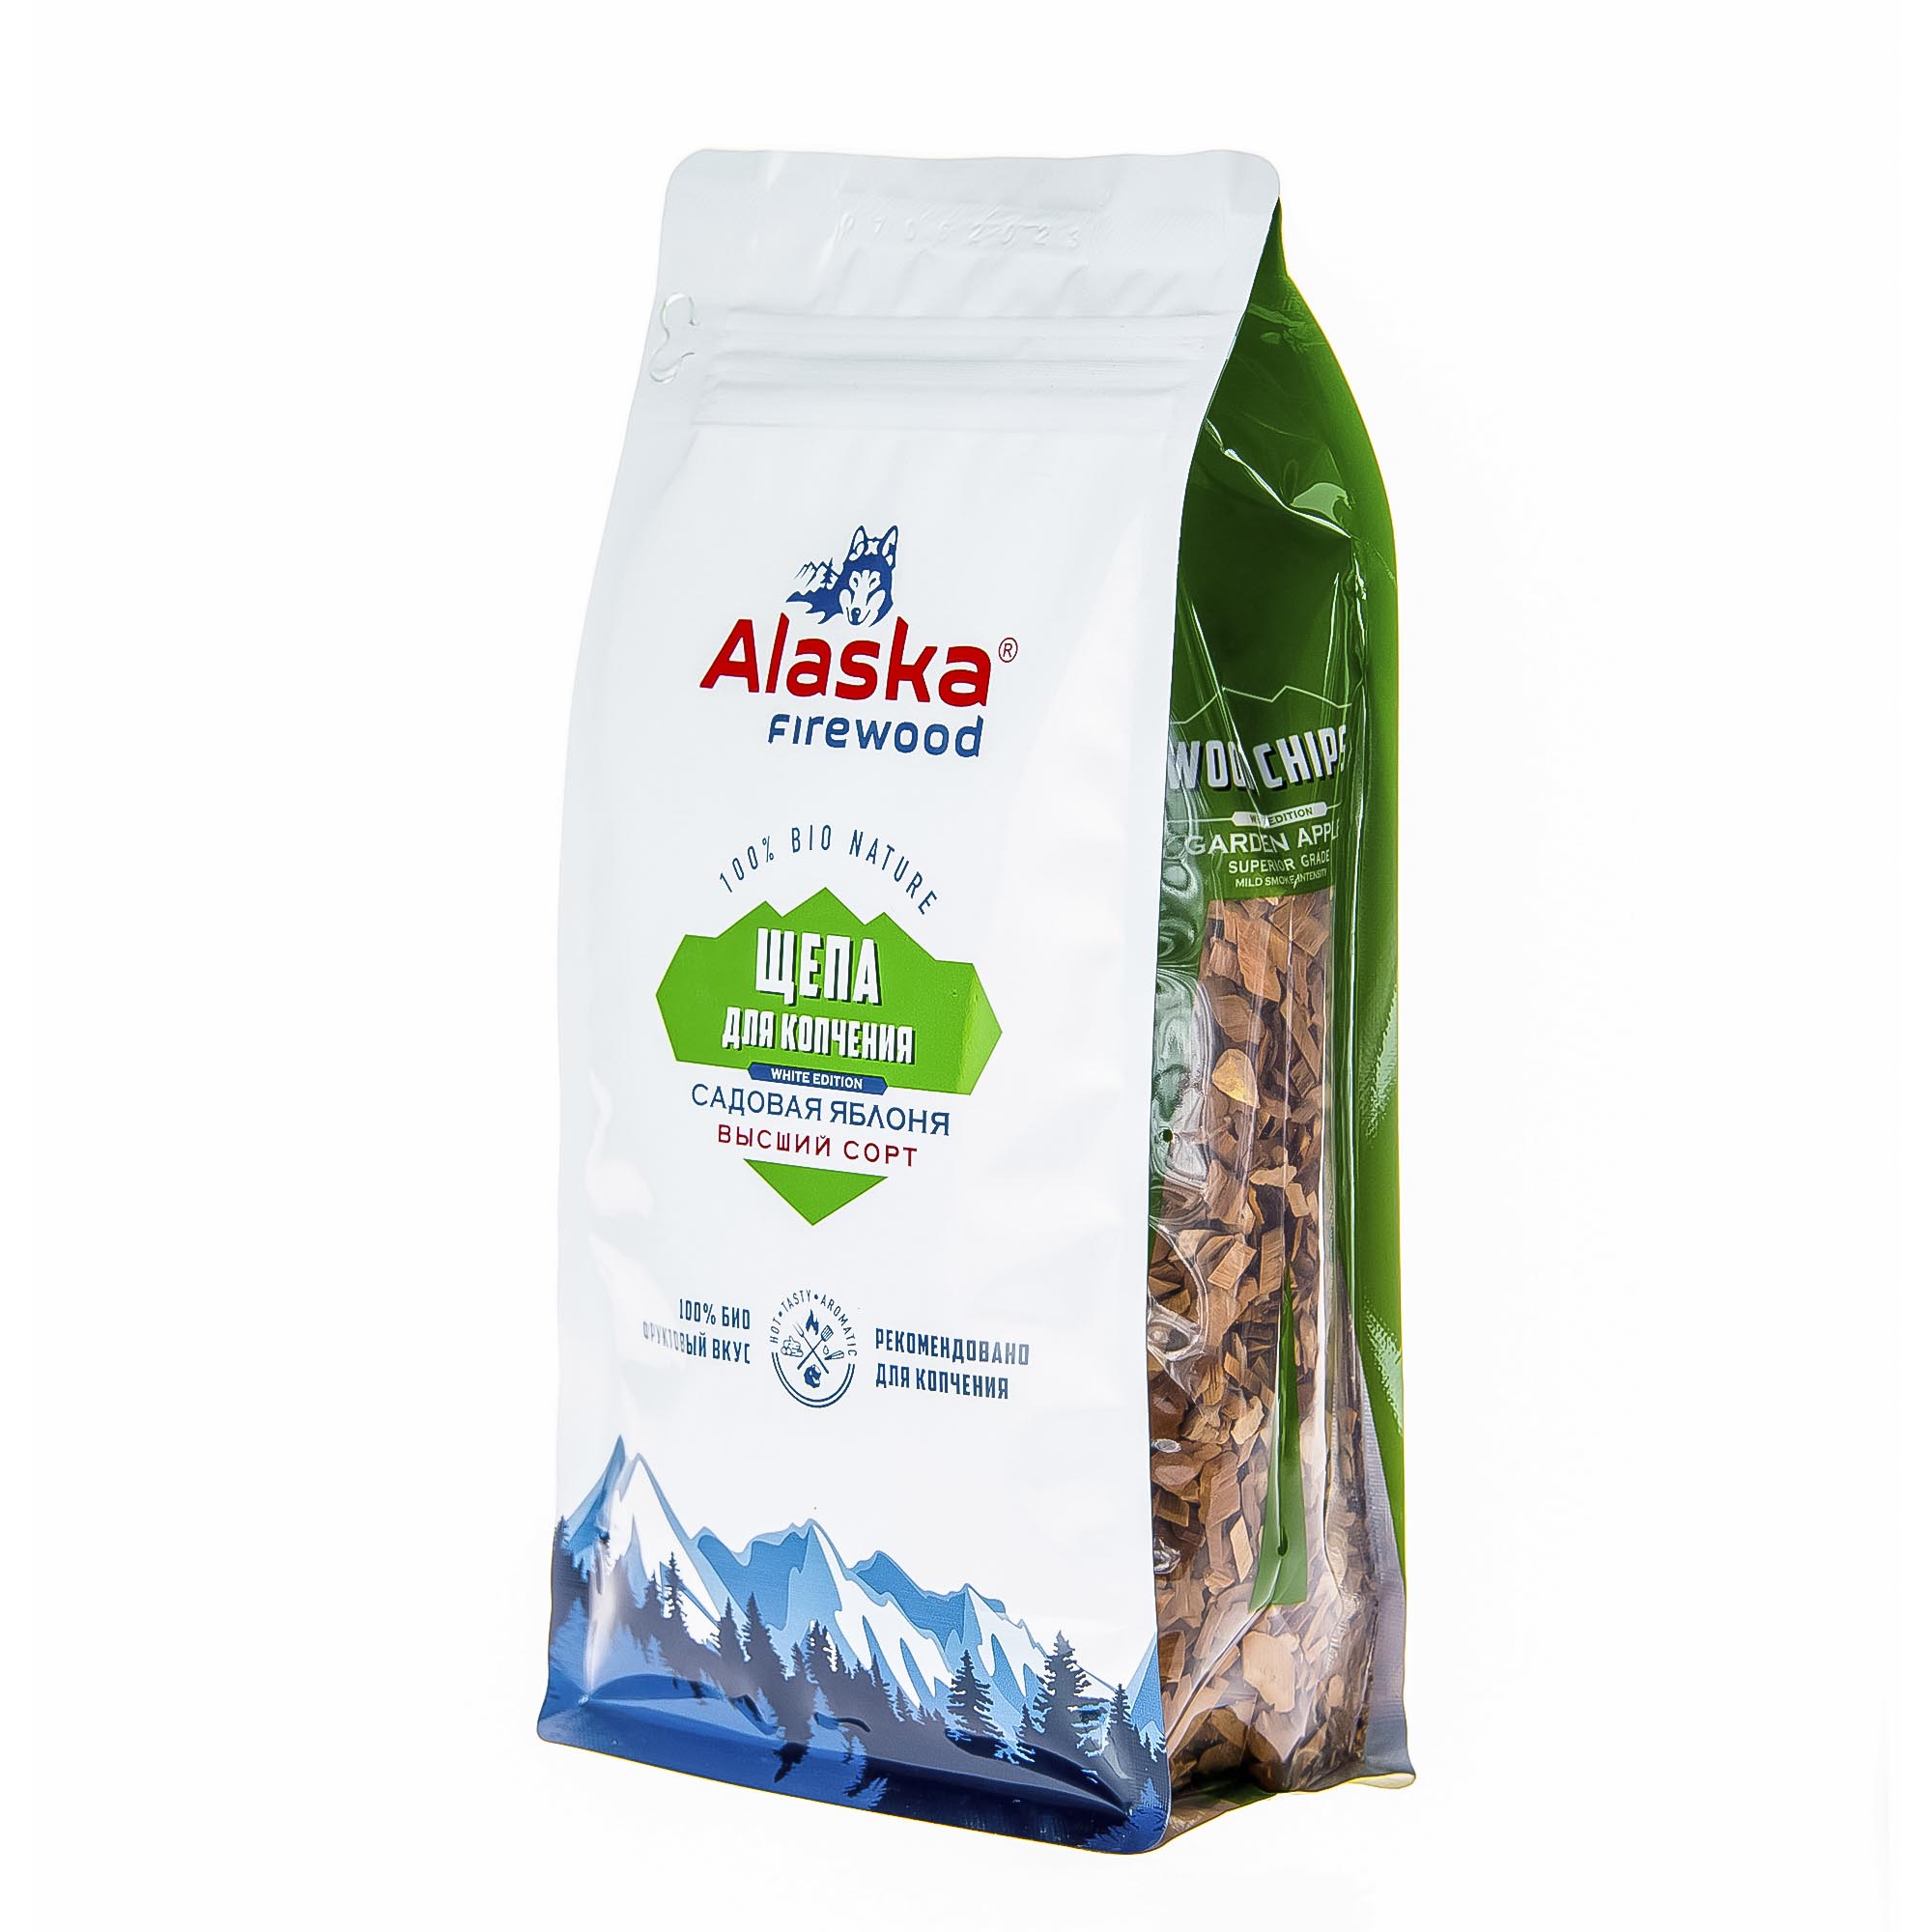 Щепа для копчения Alaska firewood яблоко 300 г уголь яблоневый alaska firewood 2кг pro